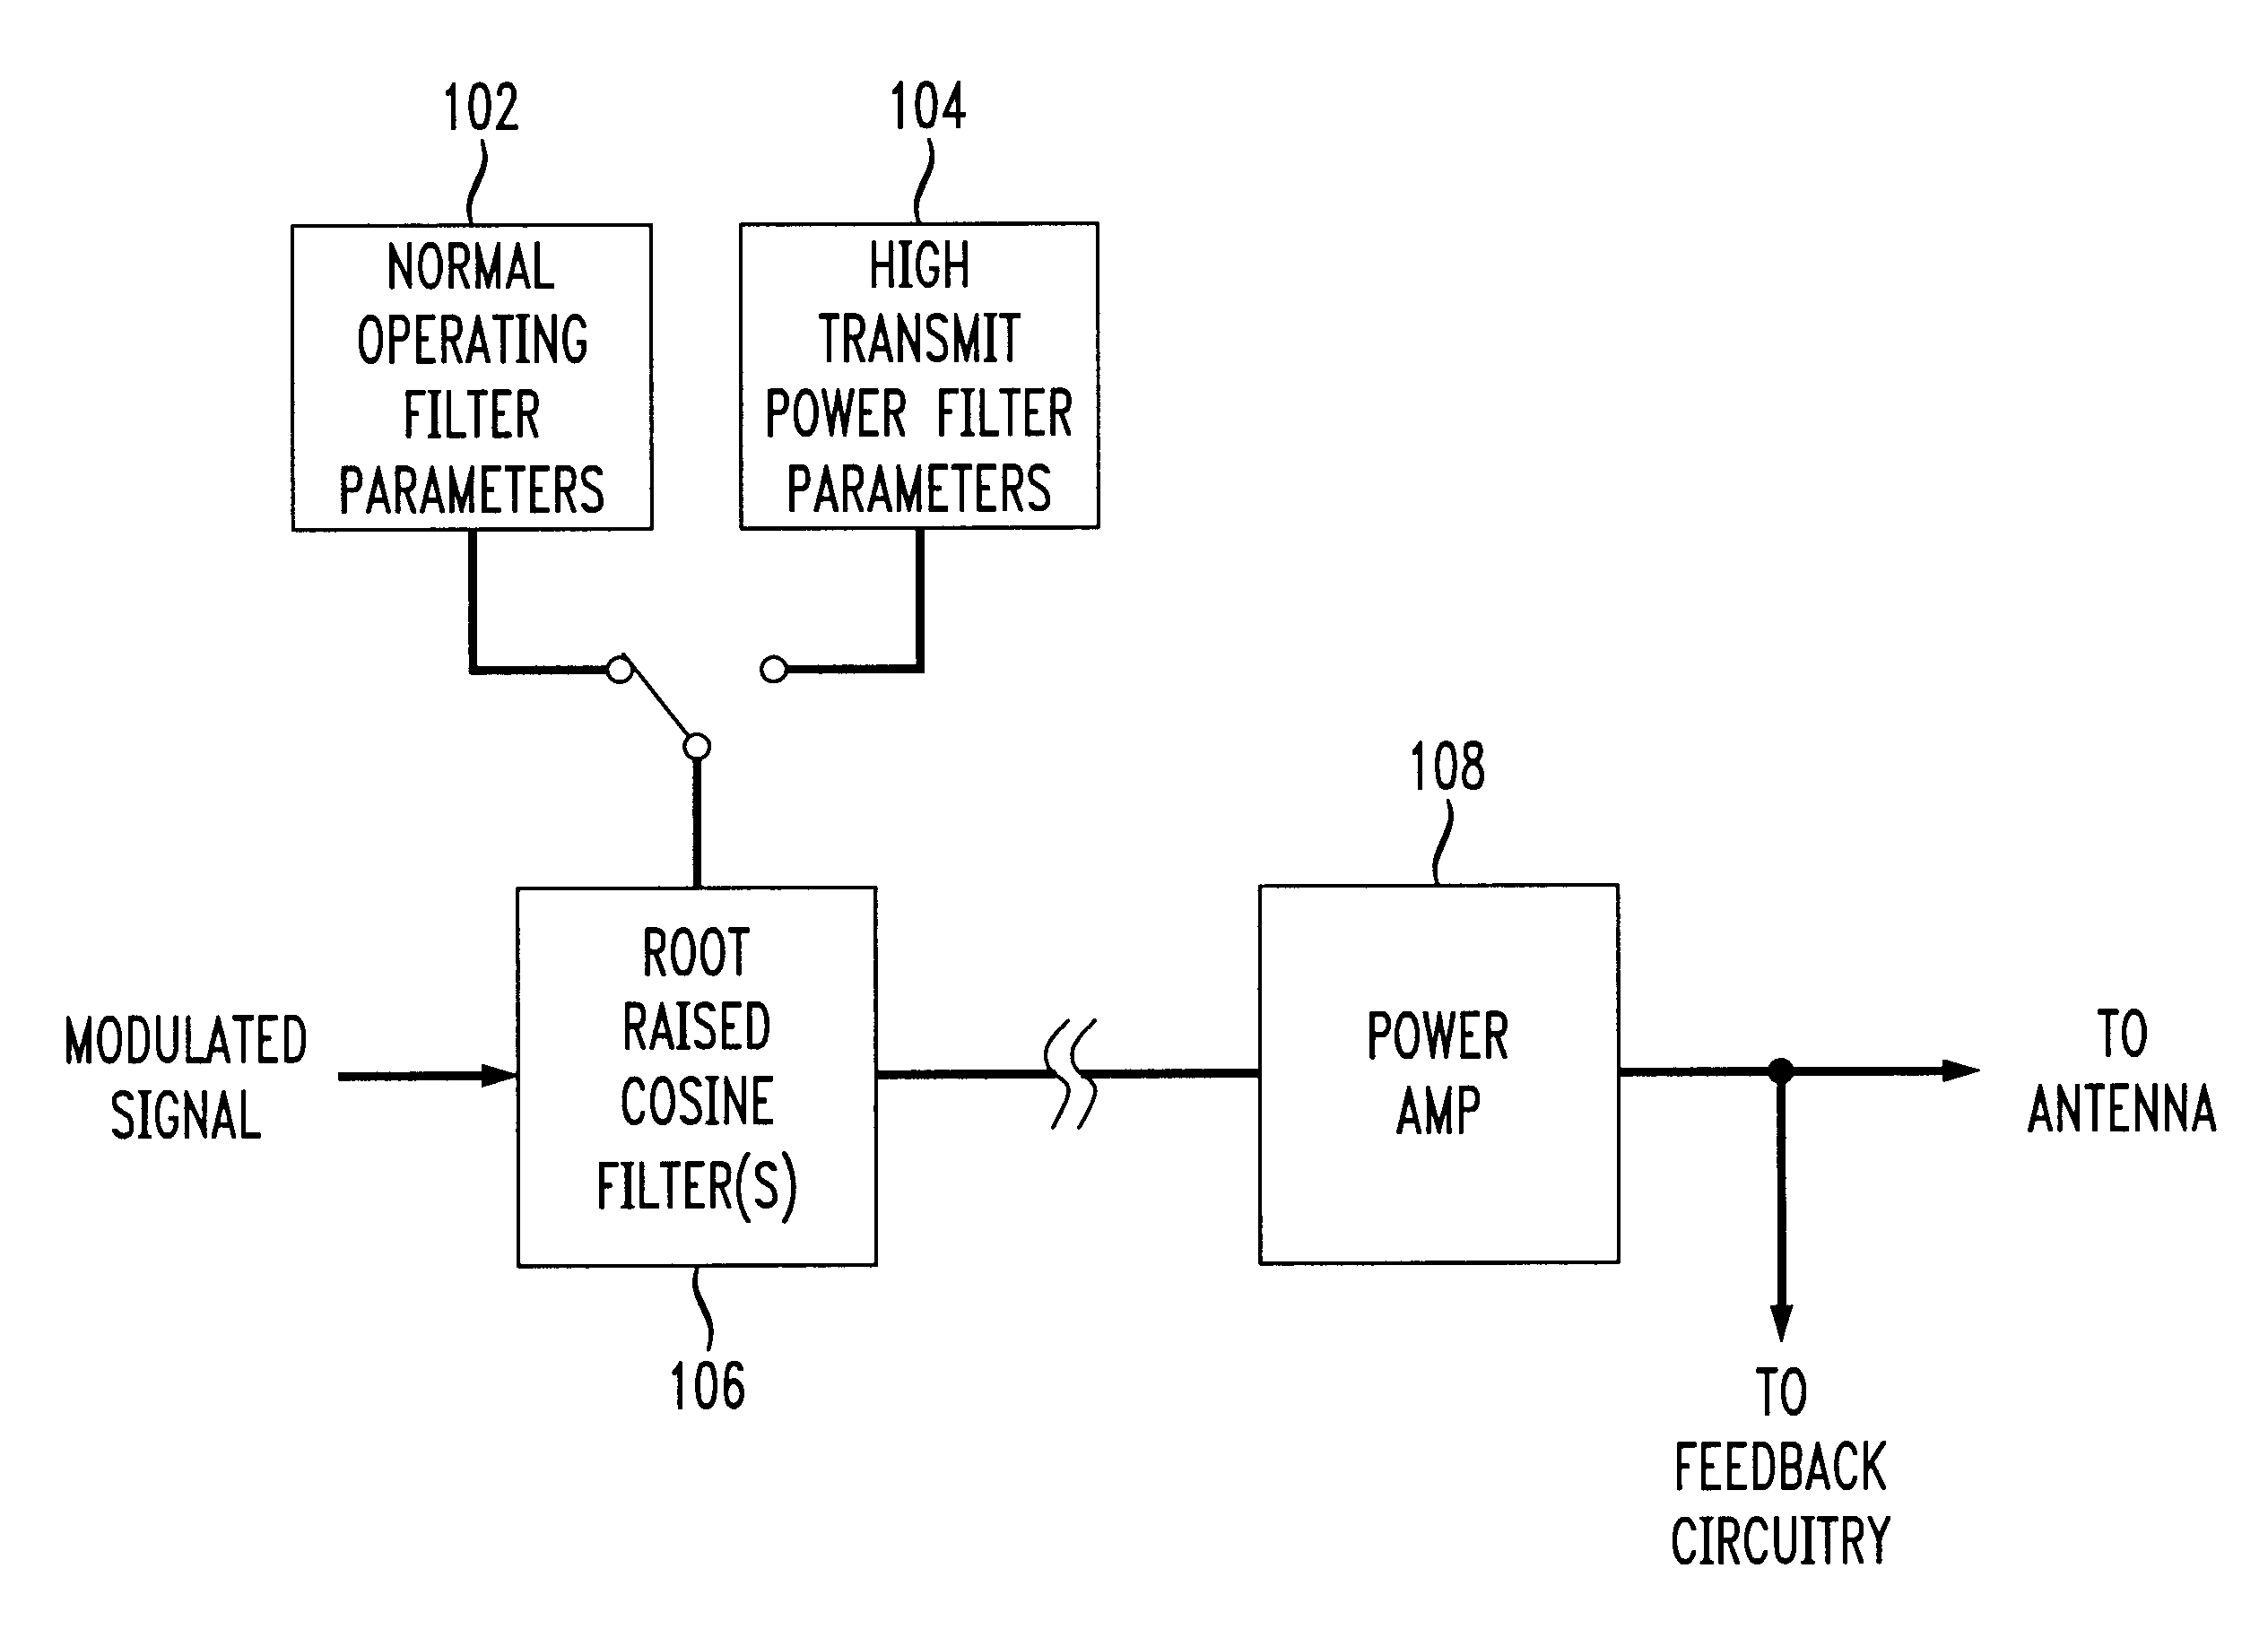 Linearization of power amplifier